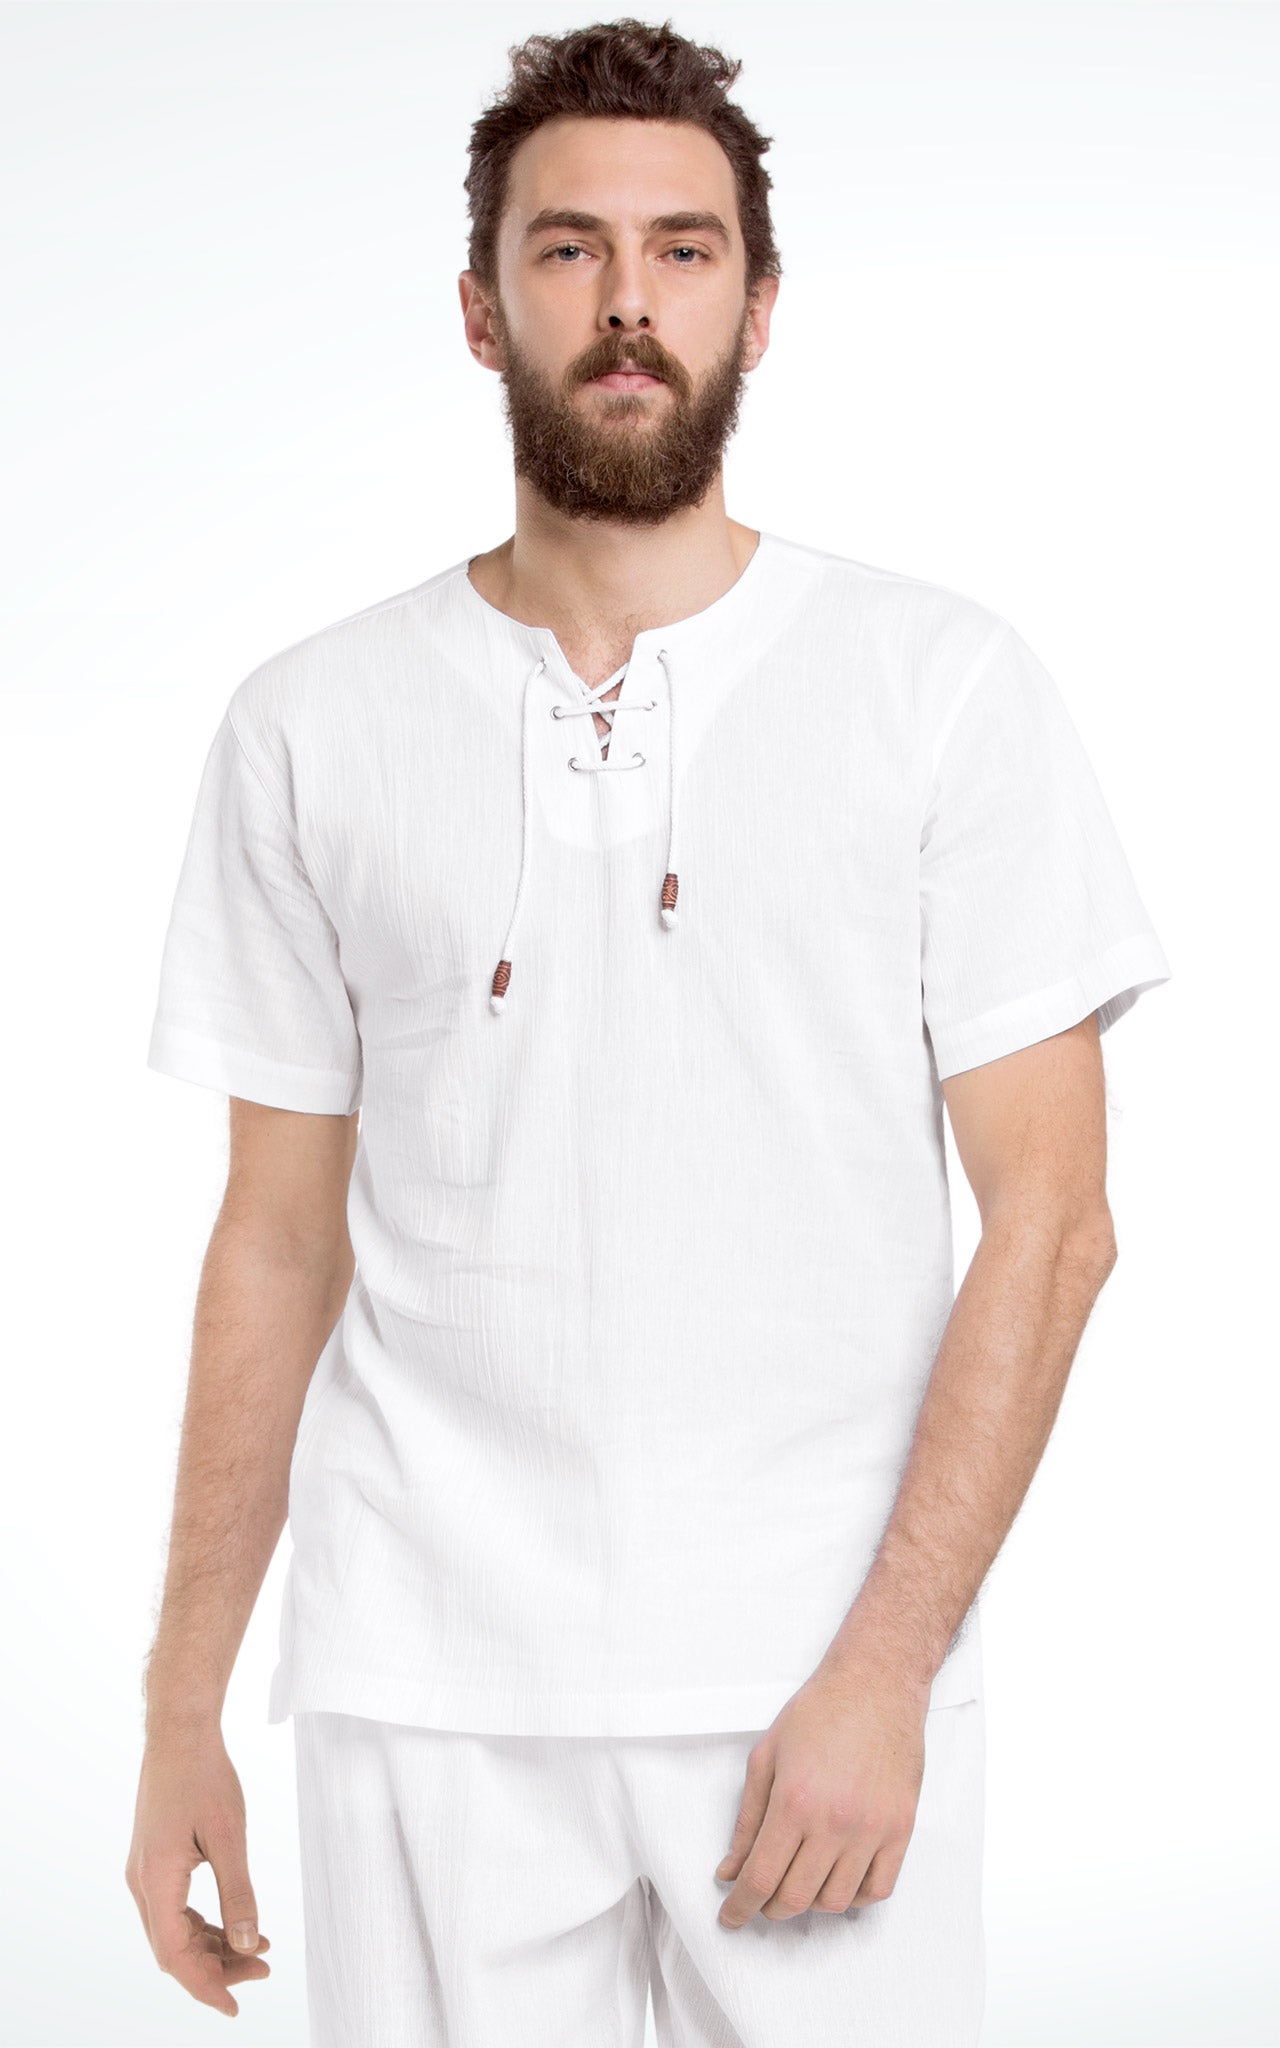 Men's Lace Up Short Sleeve Cotton T-Shirt